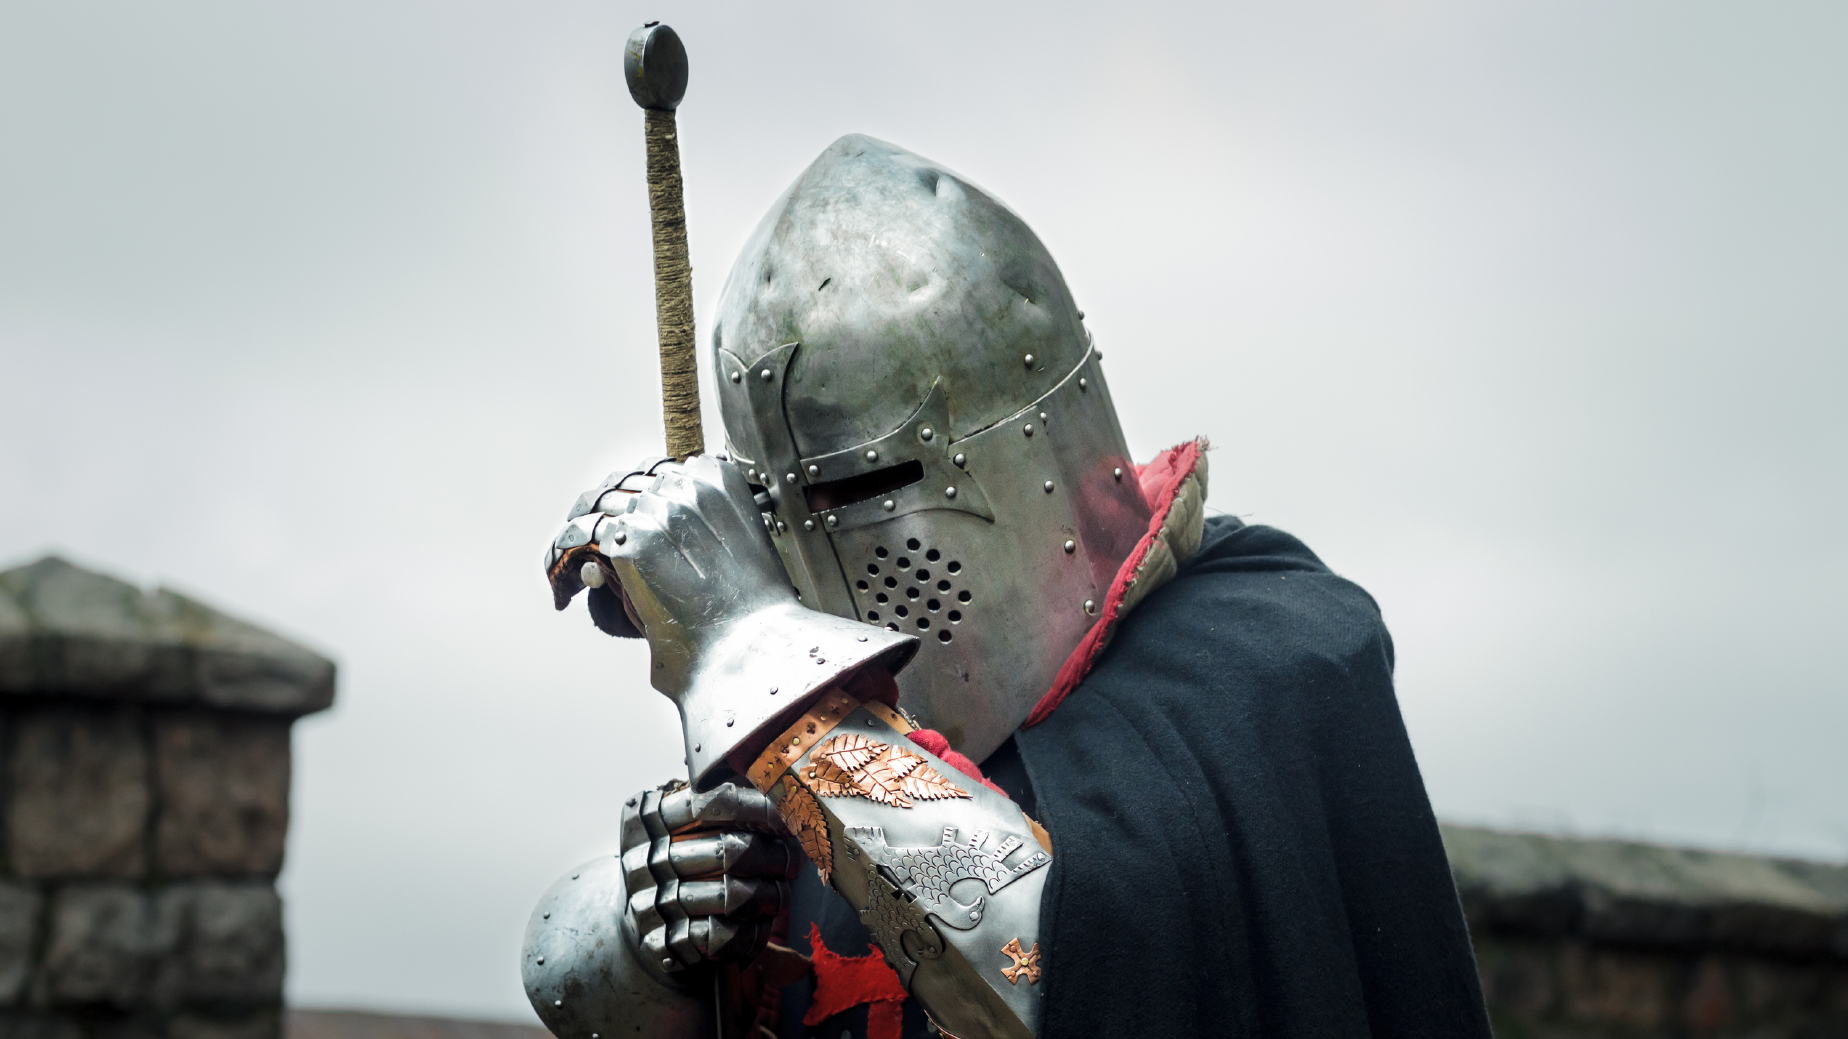 knight wearing steel gauntlets